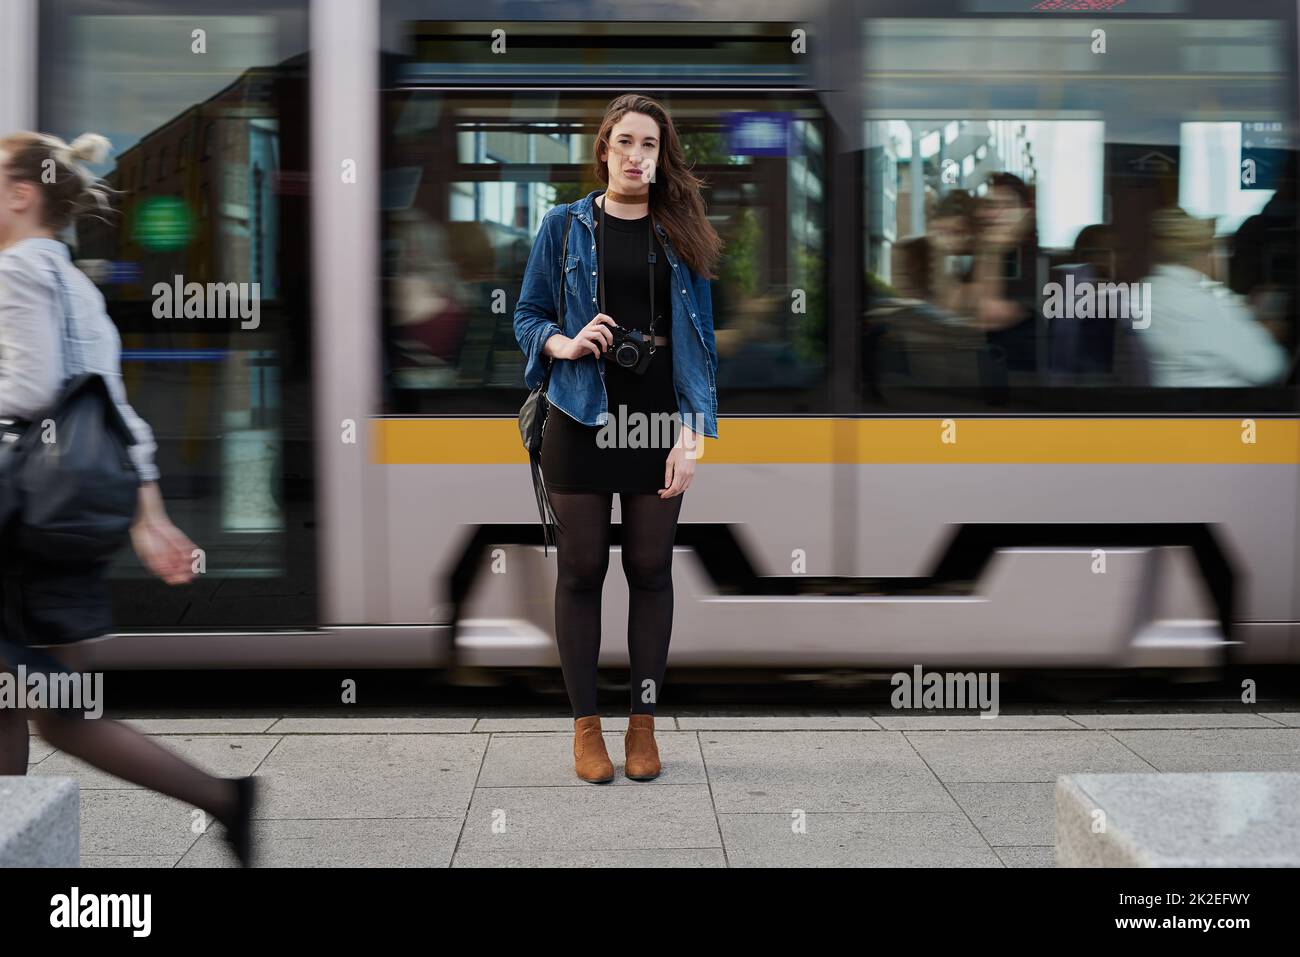 He llegado. Retrato de una joven fotógrafa atractiva parada en el metro con un tren que pasa por el fondo. Foto de stock